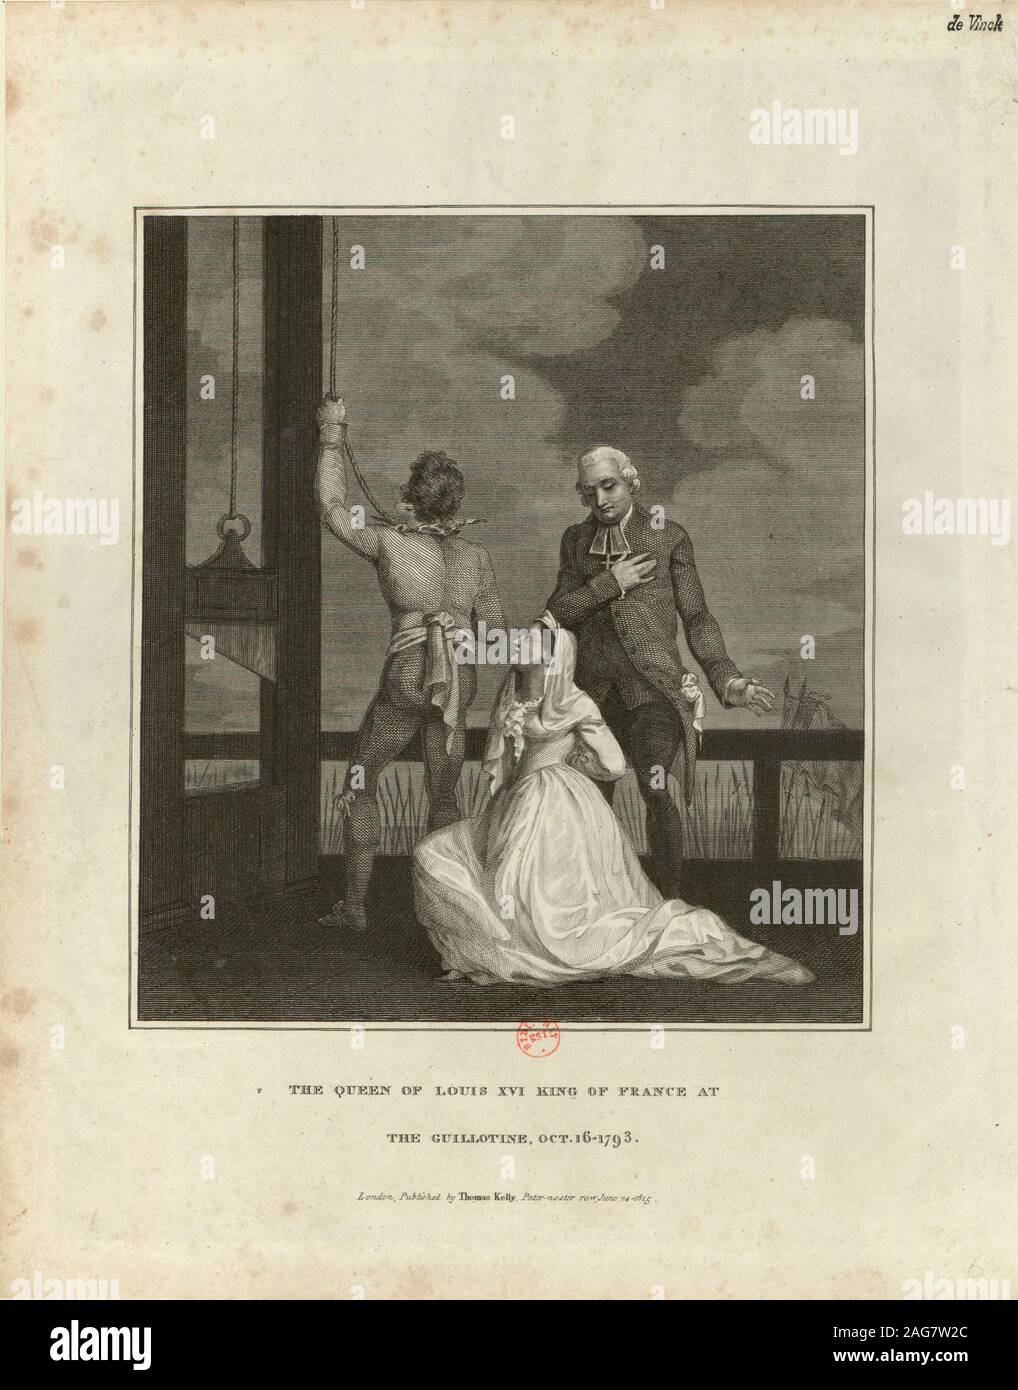 L'exécution de Marie Antoinette le 16 octobre 1793, 1815. On trouve dans la collection de Biblioth&# xe8;que Nationale de France. Banque D'Images